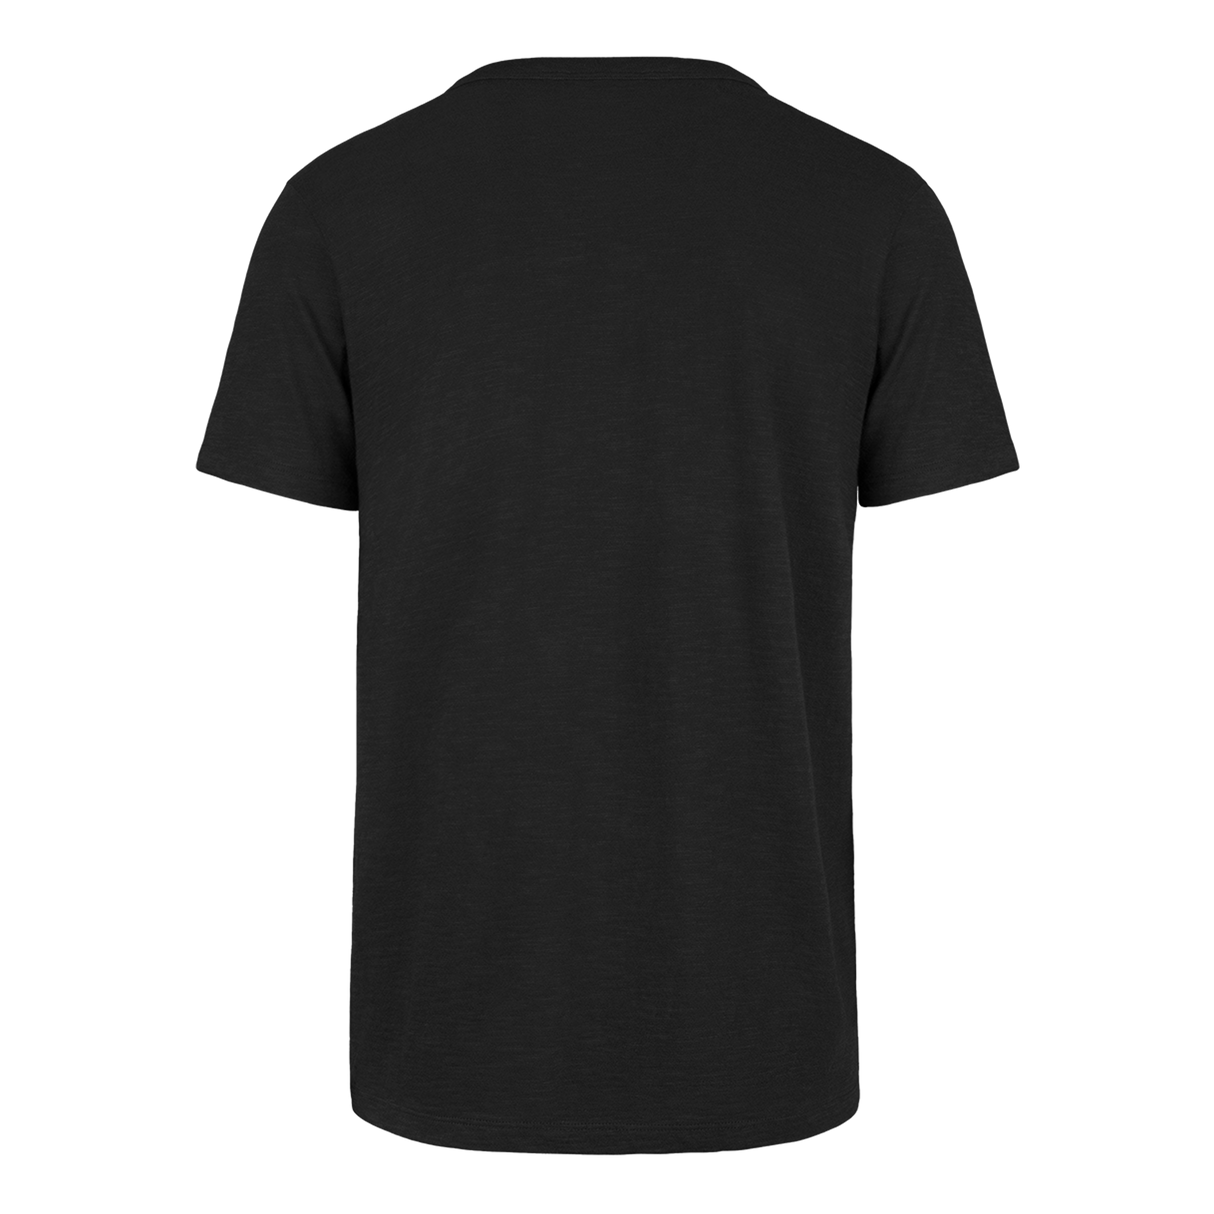 Philadelphia Eagles Crown Men's Short Sleeve T-Shirt